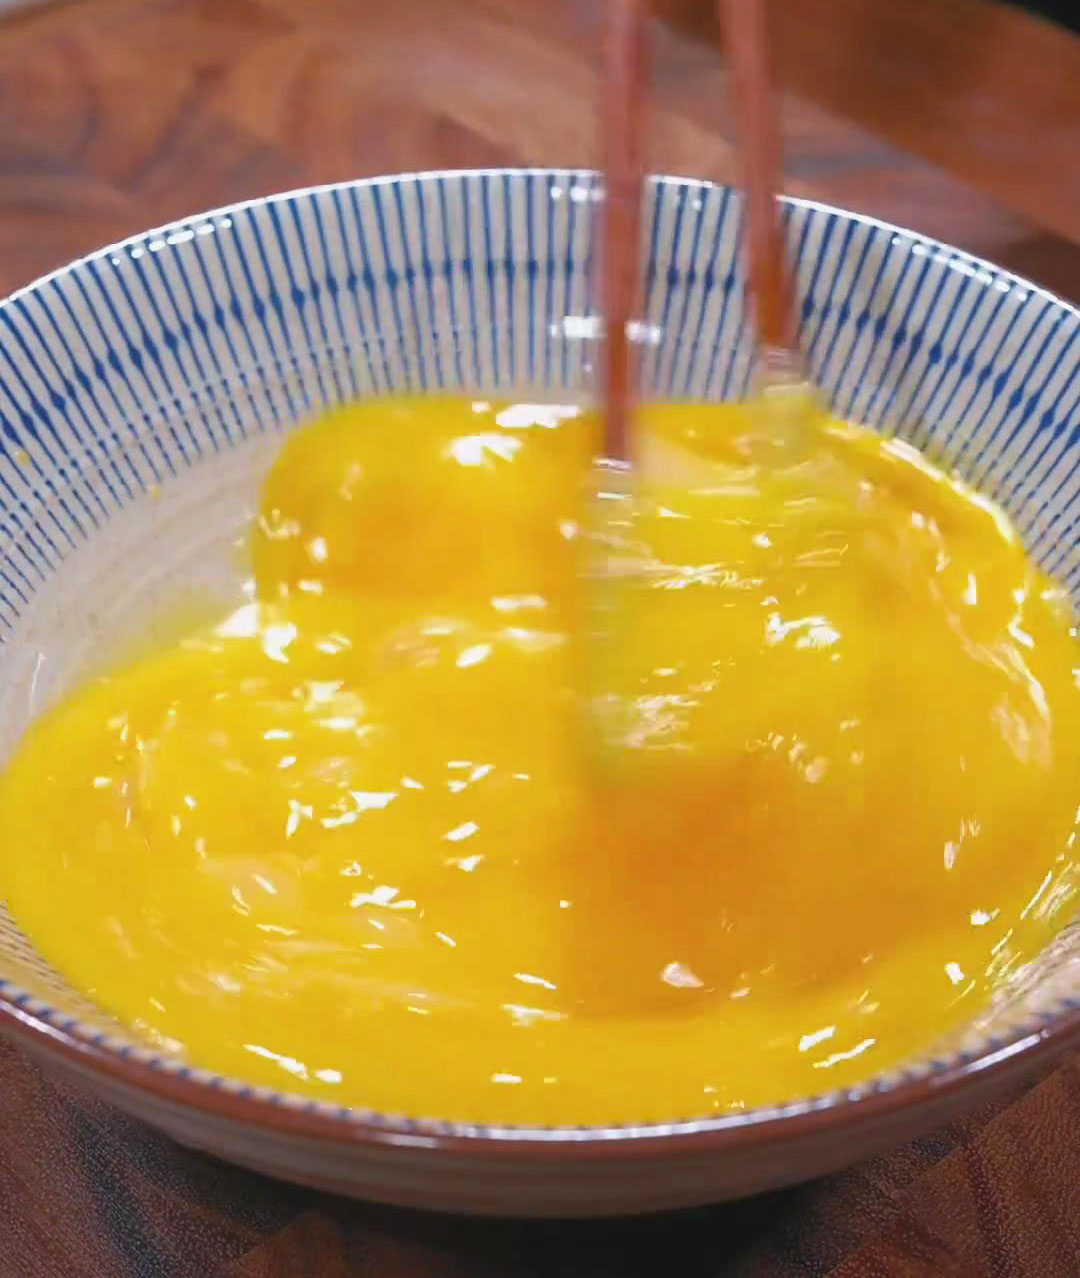 Crack 4 eggs into a bowl